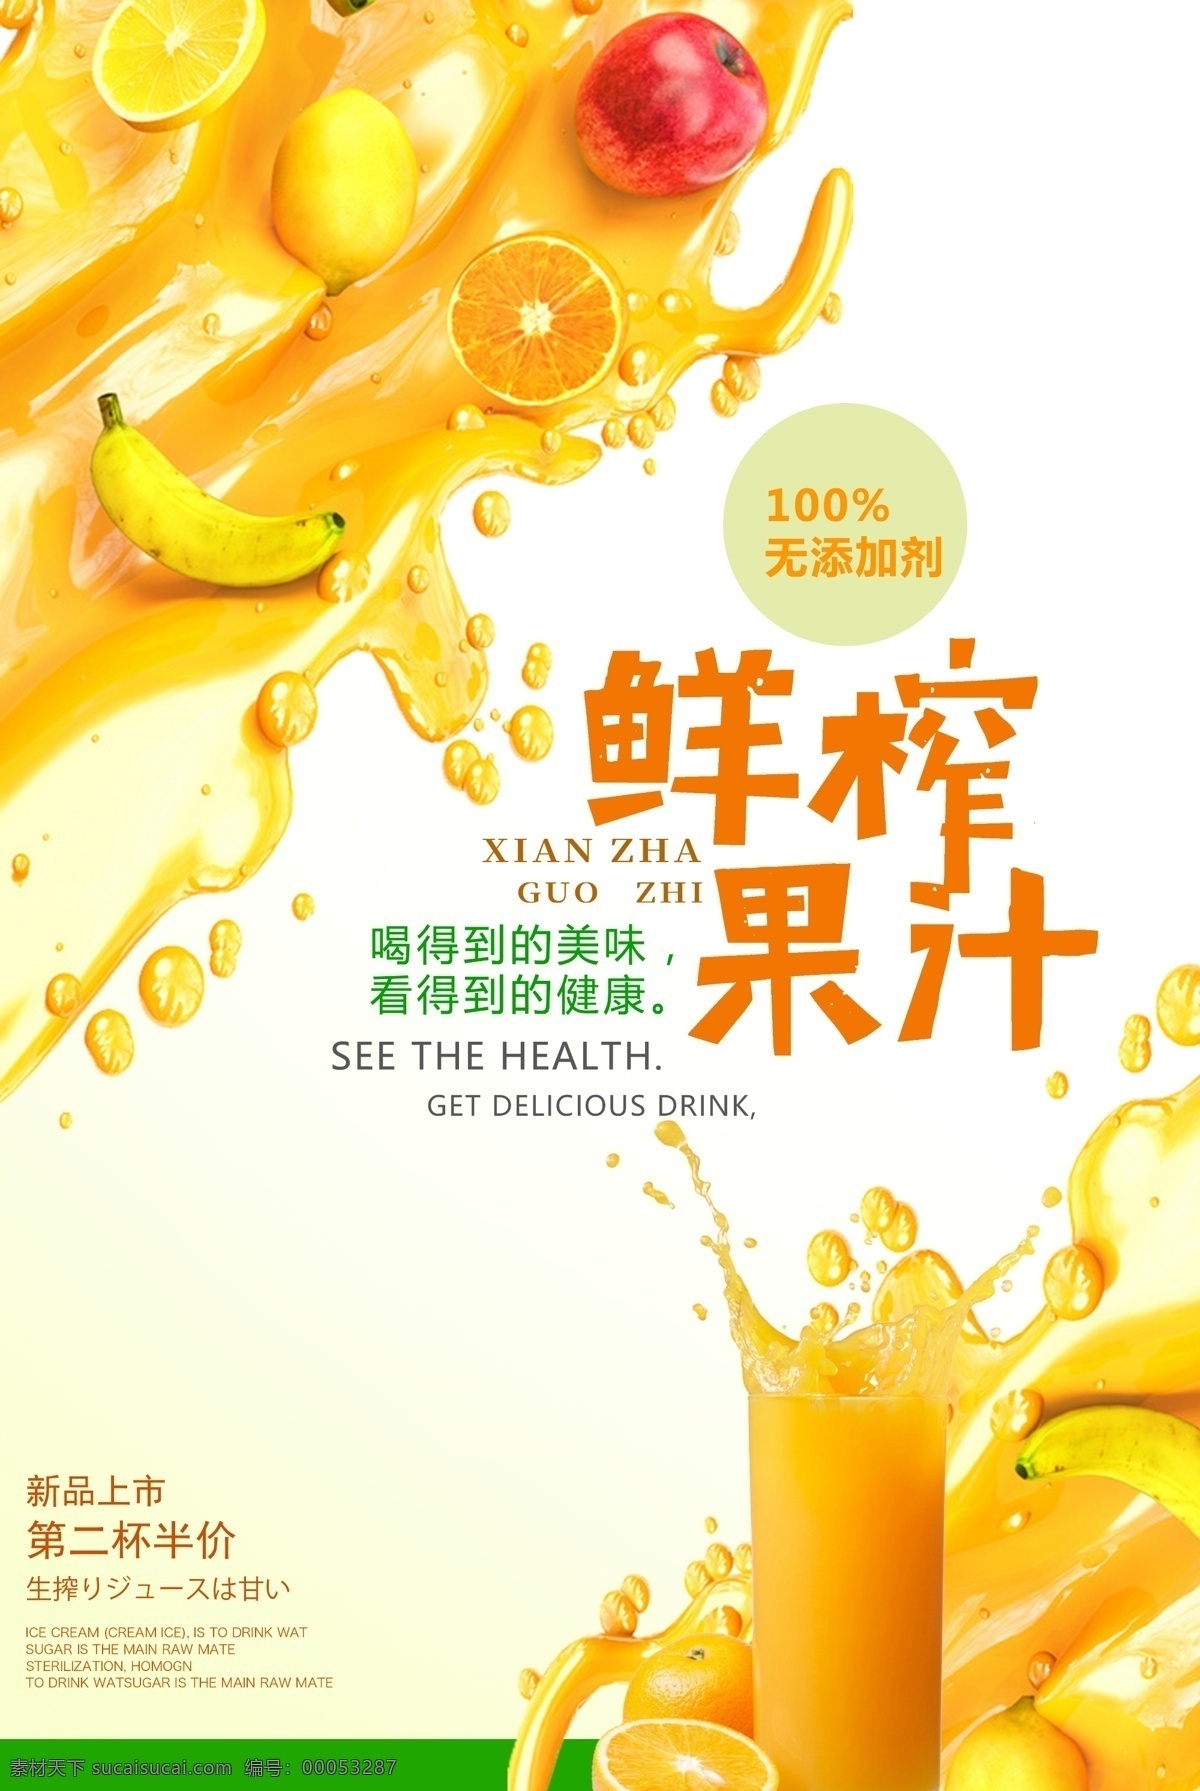 鲜榨果汁海报 果汁 橙汁 海报 鲜榨 新鲜 营养 饮品广告